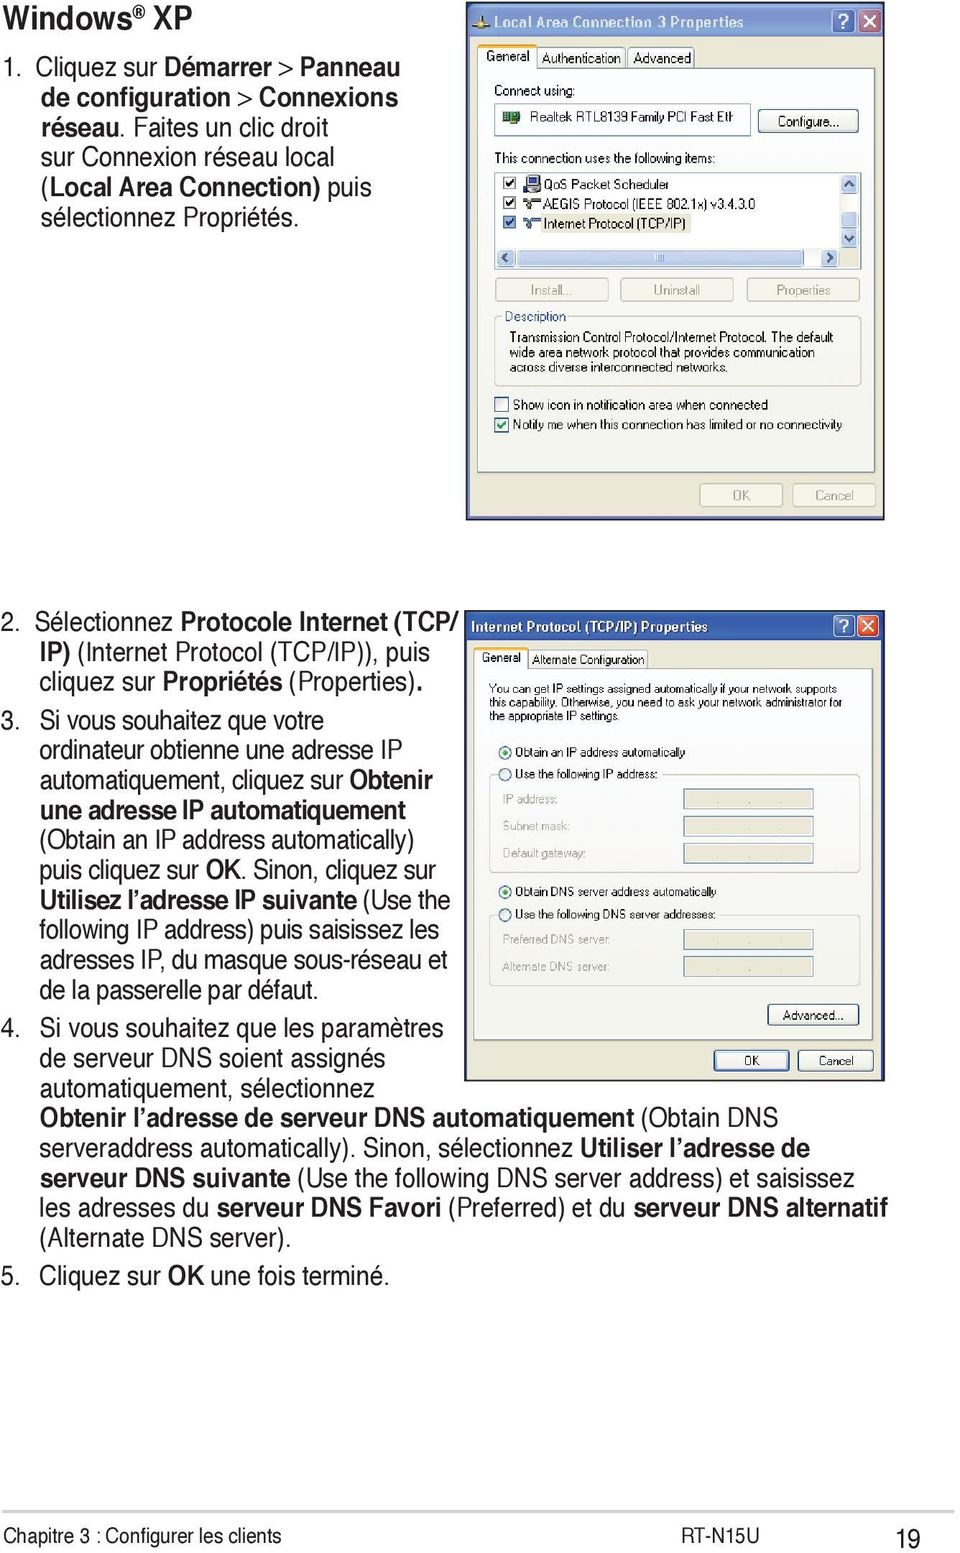 Si vous souhaitez que votre ordinateur obtienne une adresse IP automatiquement, cliquez sur Obtenir une adresse IP automatiquement (Obtain an IP address automatically) puis cliquez sur OK.